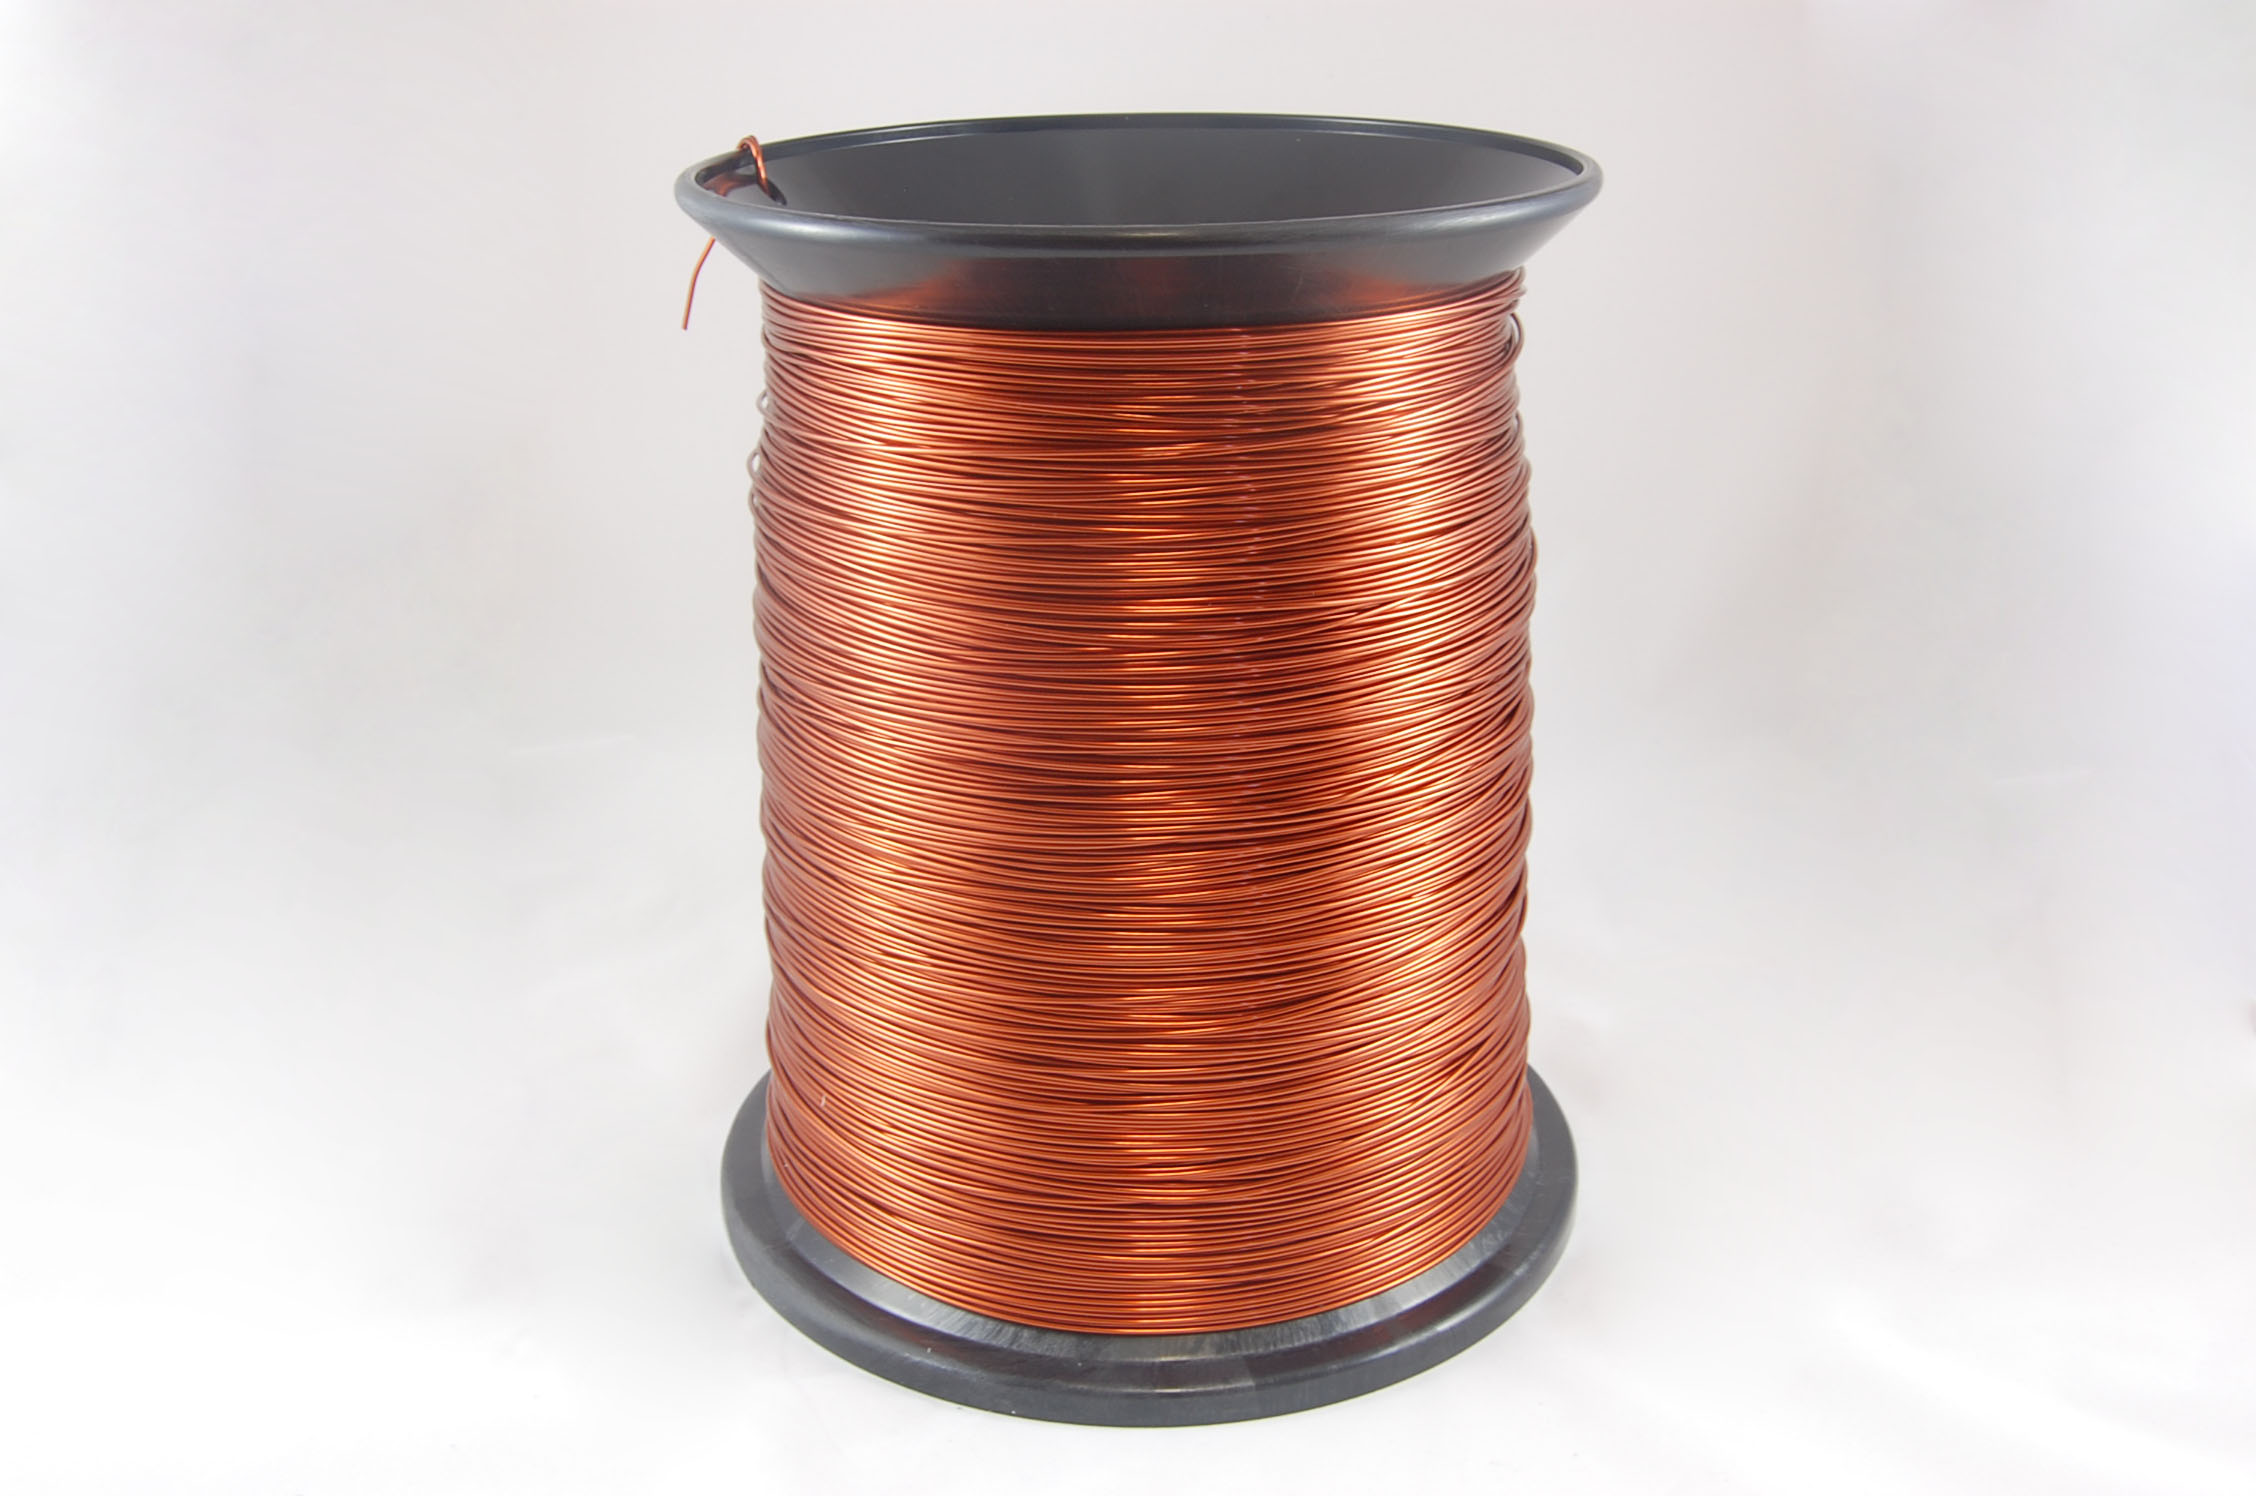 #18 Heavy GP/MR-200 Round MW 35 Copper Magnet Wire 200°C, copper, 85 LB pail (average wght.)